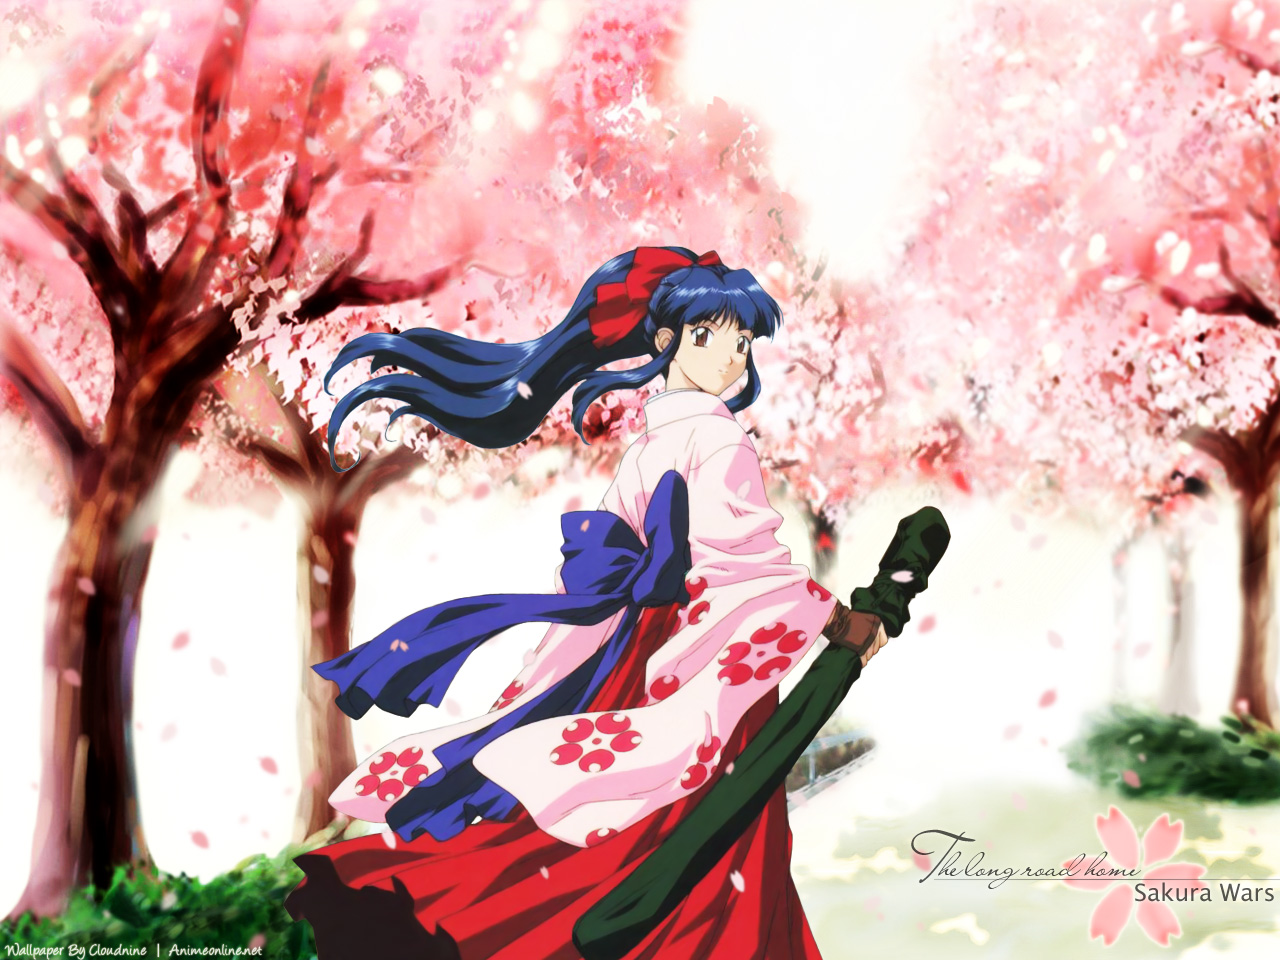 Download High quality Sakura Wars wallpaper / Anime / 1280x960